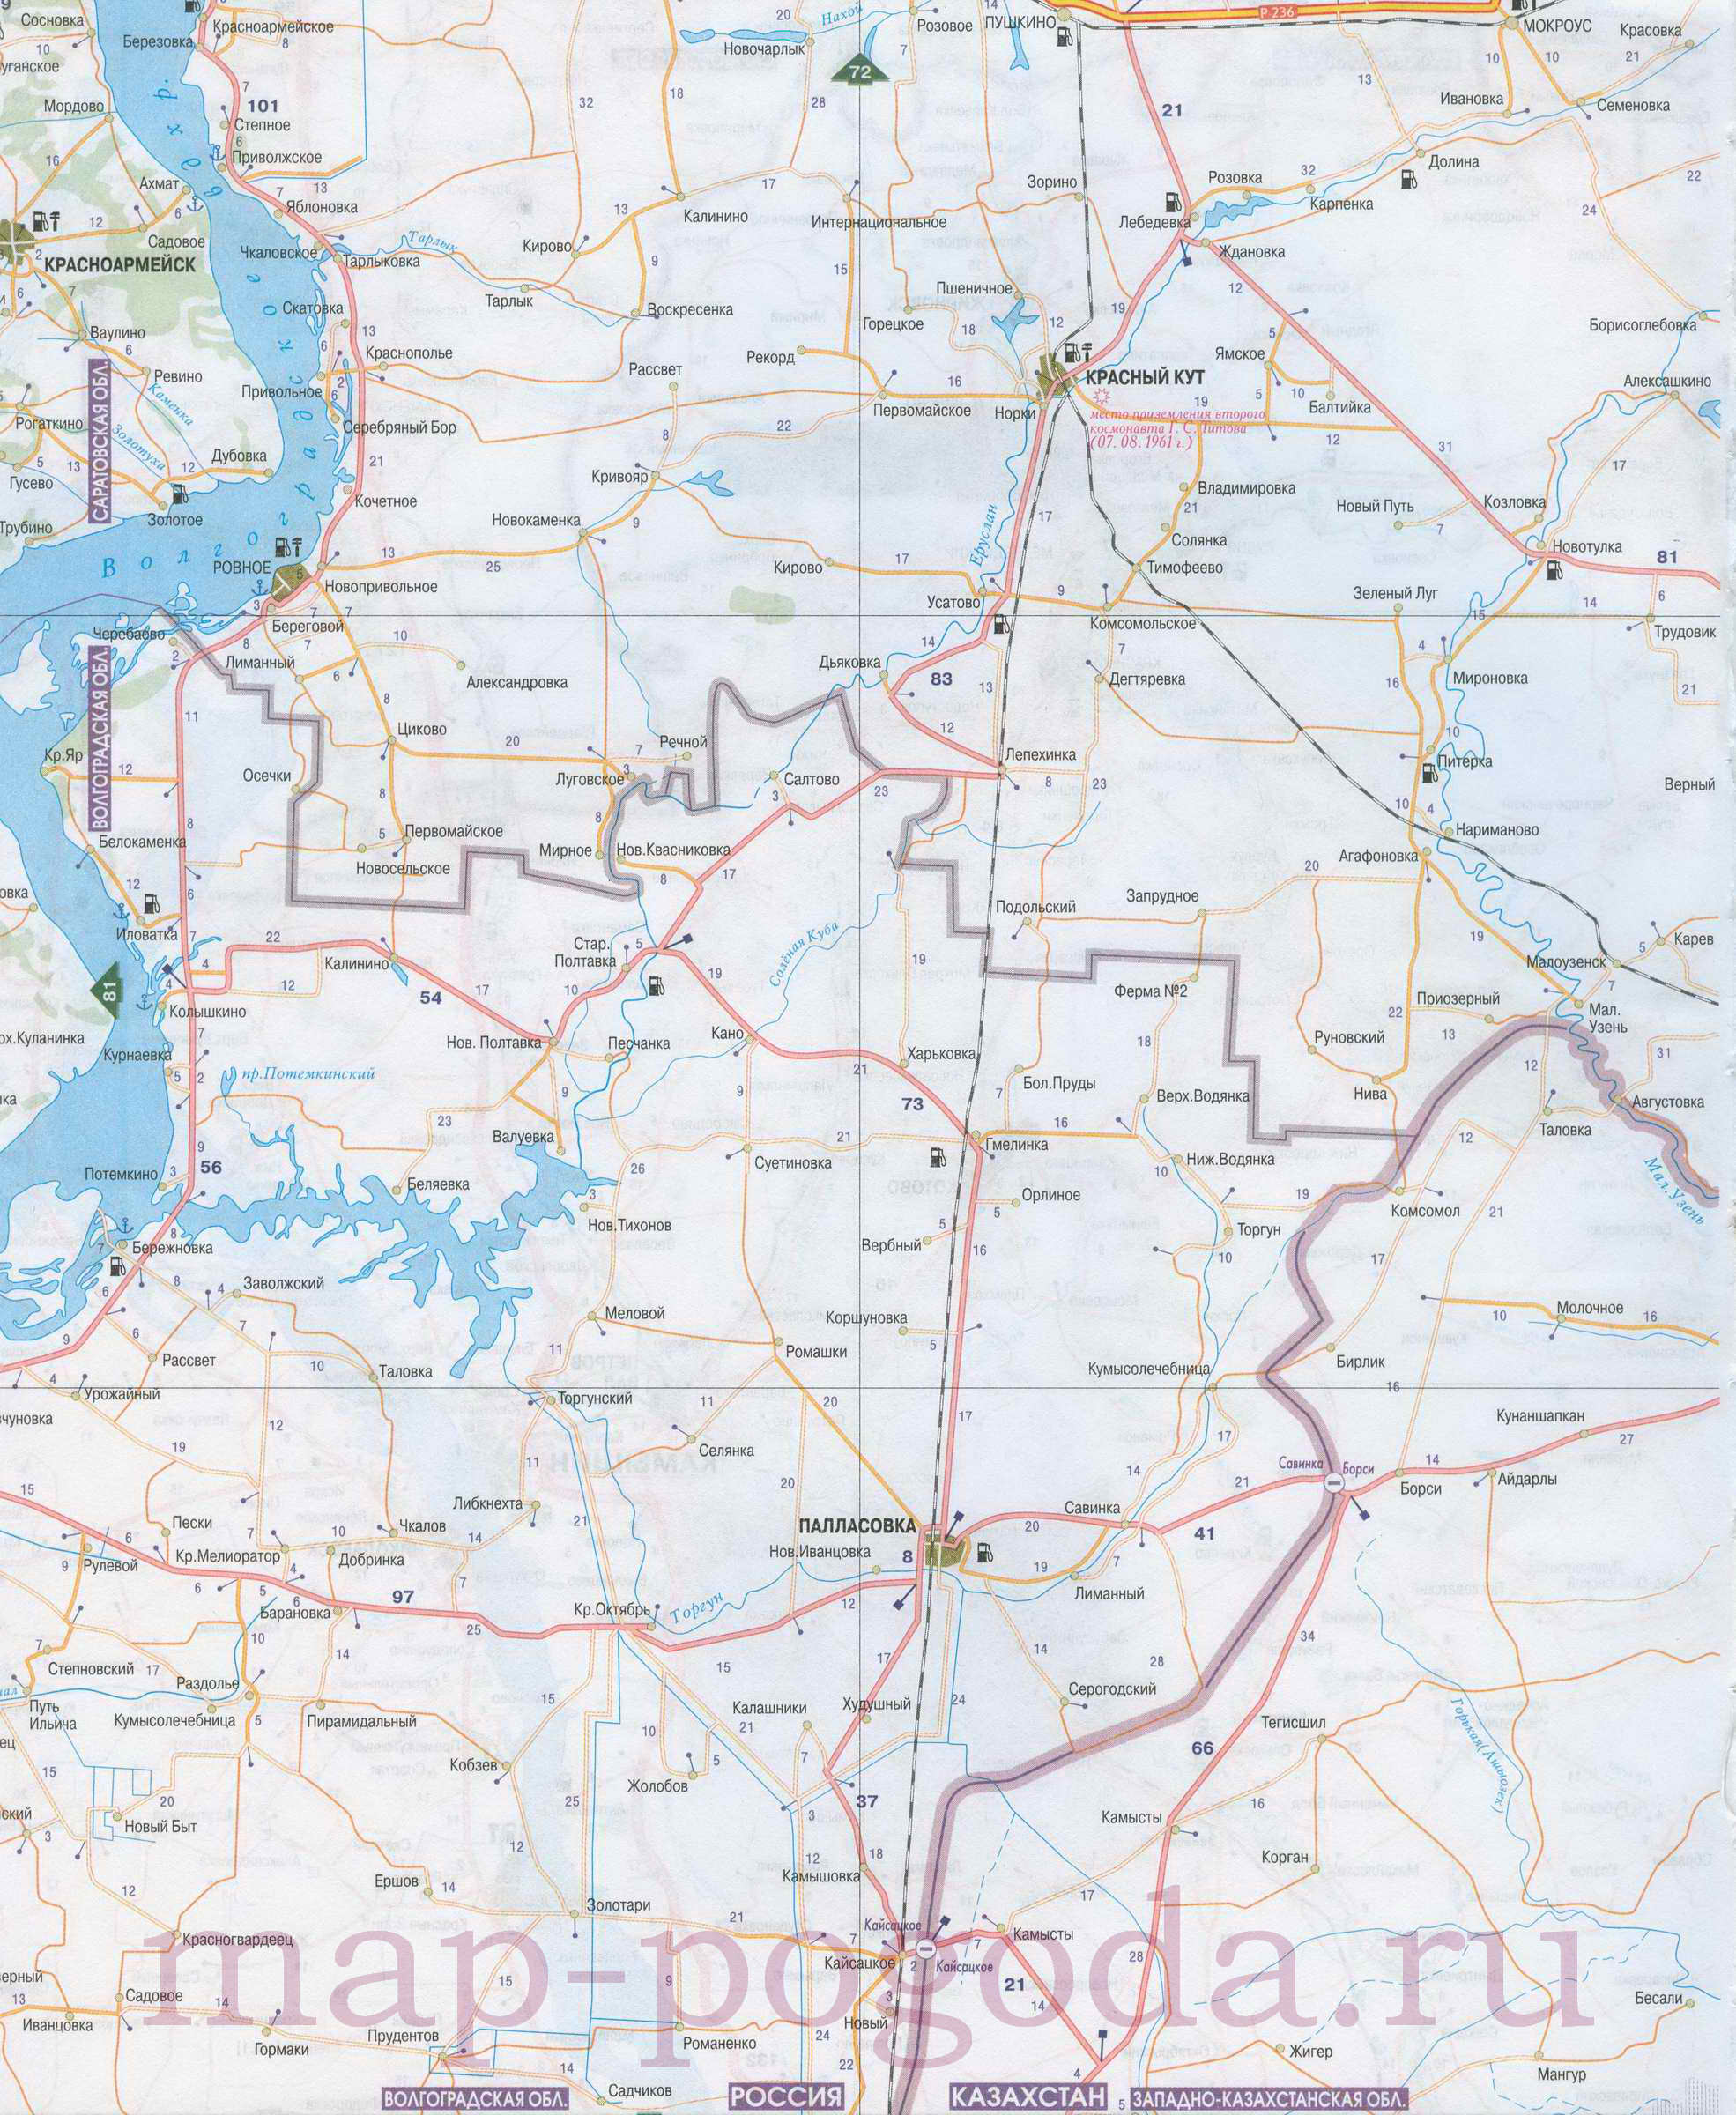 Карта Волгоградской области. Карта автомобильных дорог севера Волгоградской области масштаба 1см:7км, C0 - 